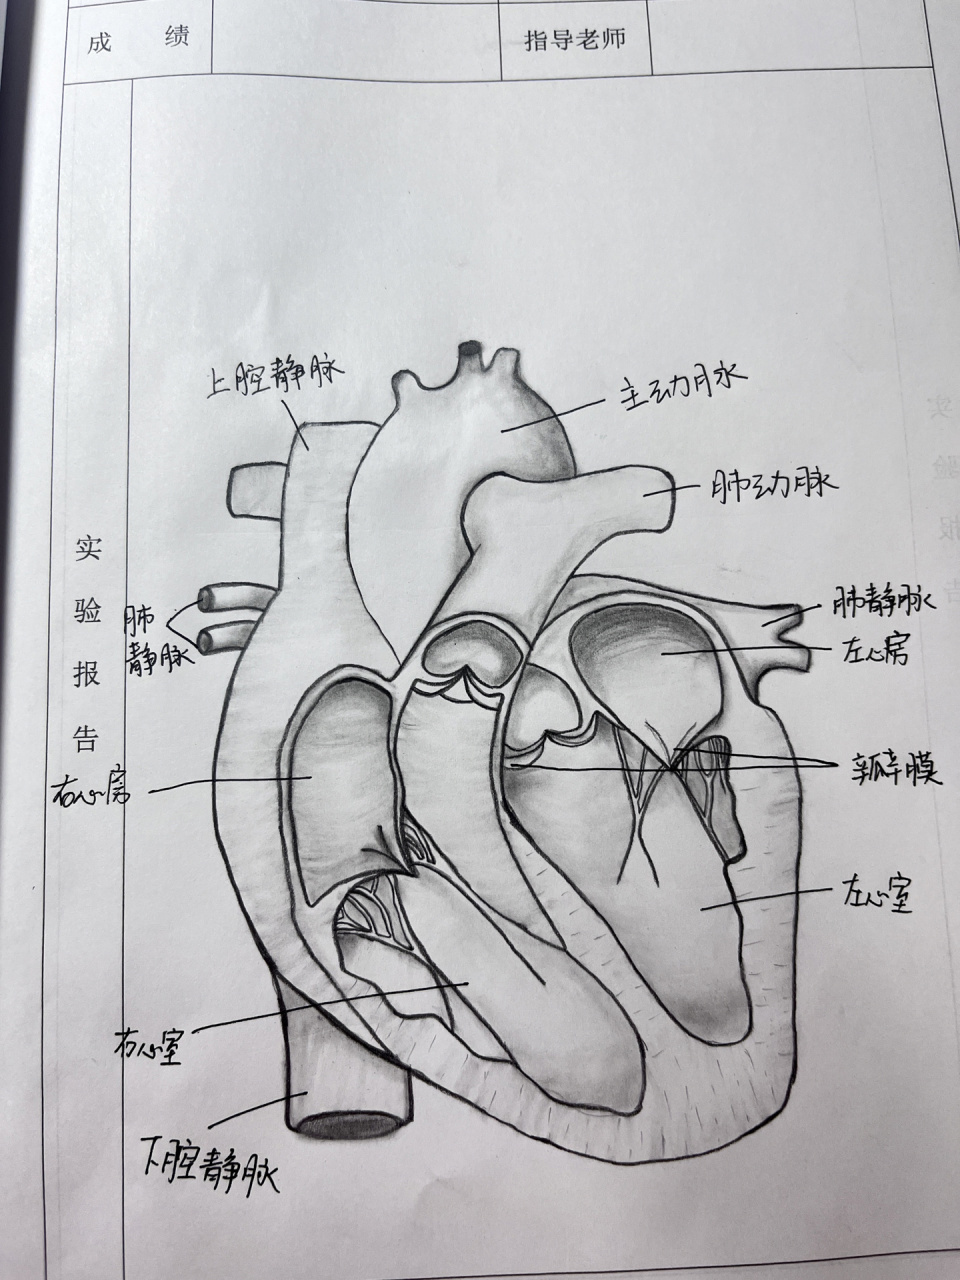 心脏图手绘简笔图片